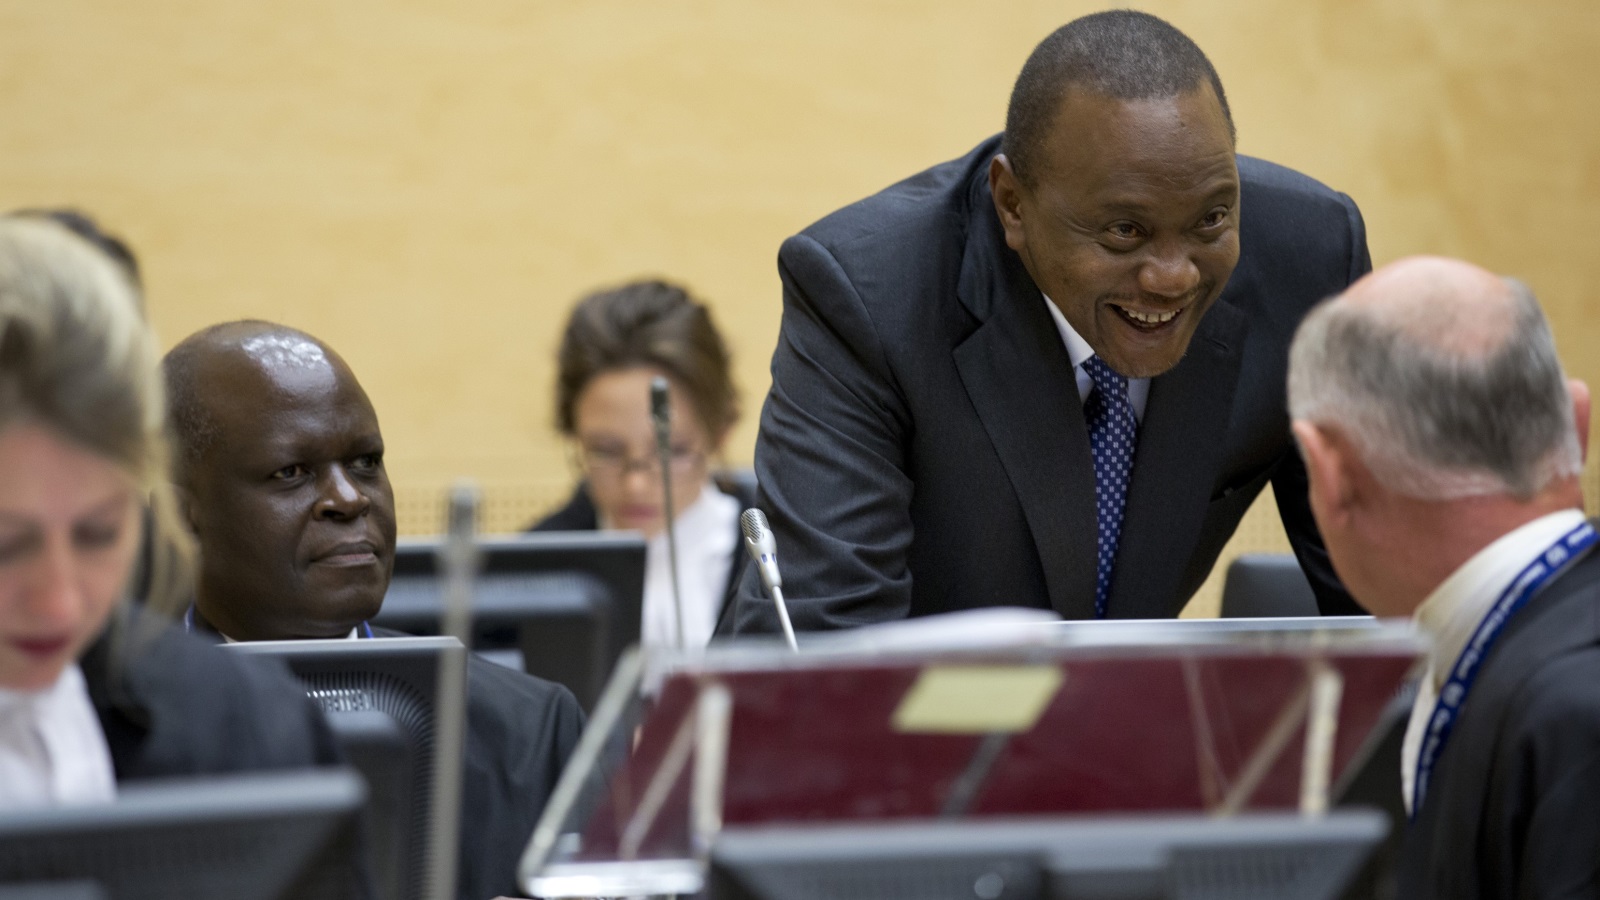 ‪كينياتا يتحدث إلى محاميه في مقر المحكمة الجنائية بلاهاي خلال جلسة عقدت عام 2014‬ (الأوروبية)